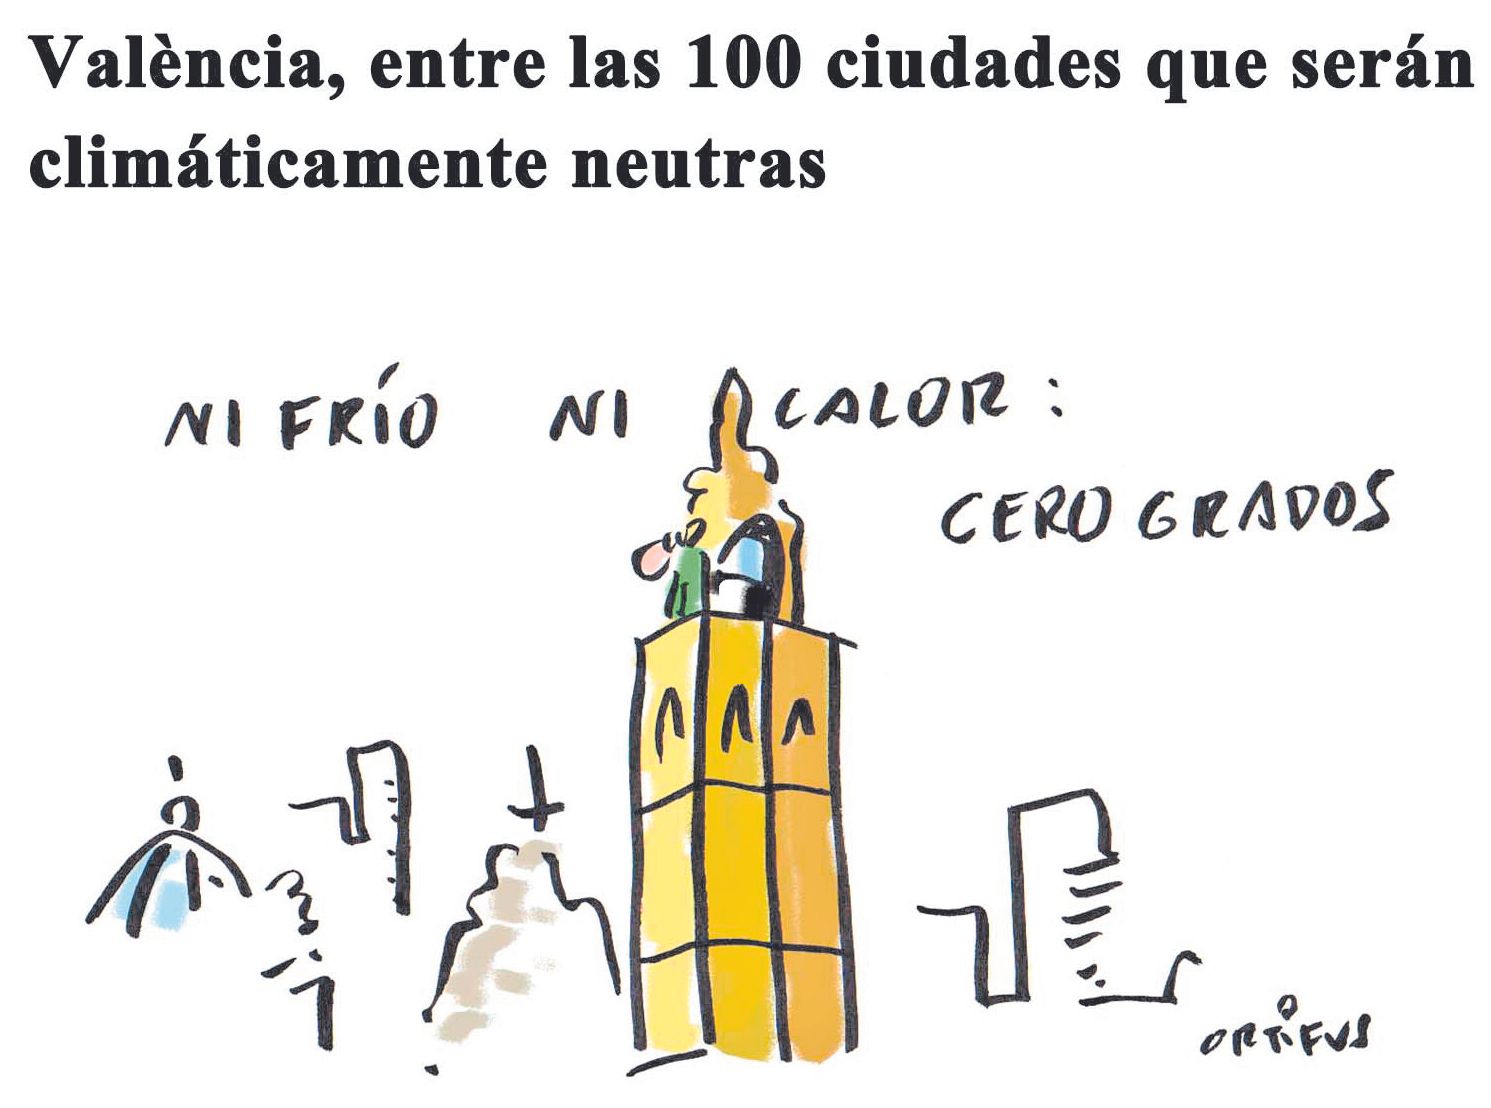 València, entre las 100 ciudades que serán climáticamente neutras